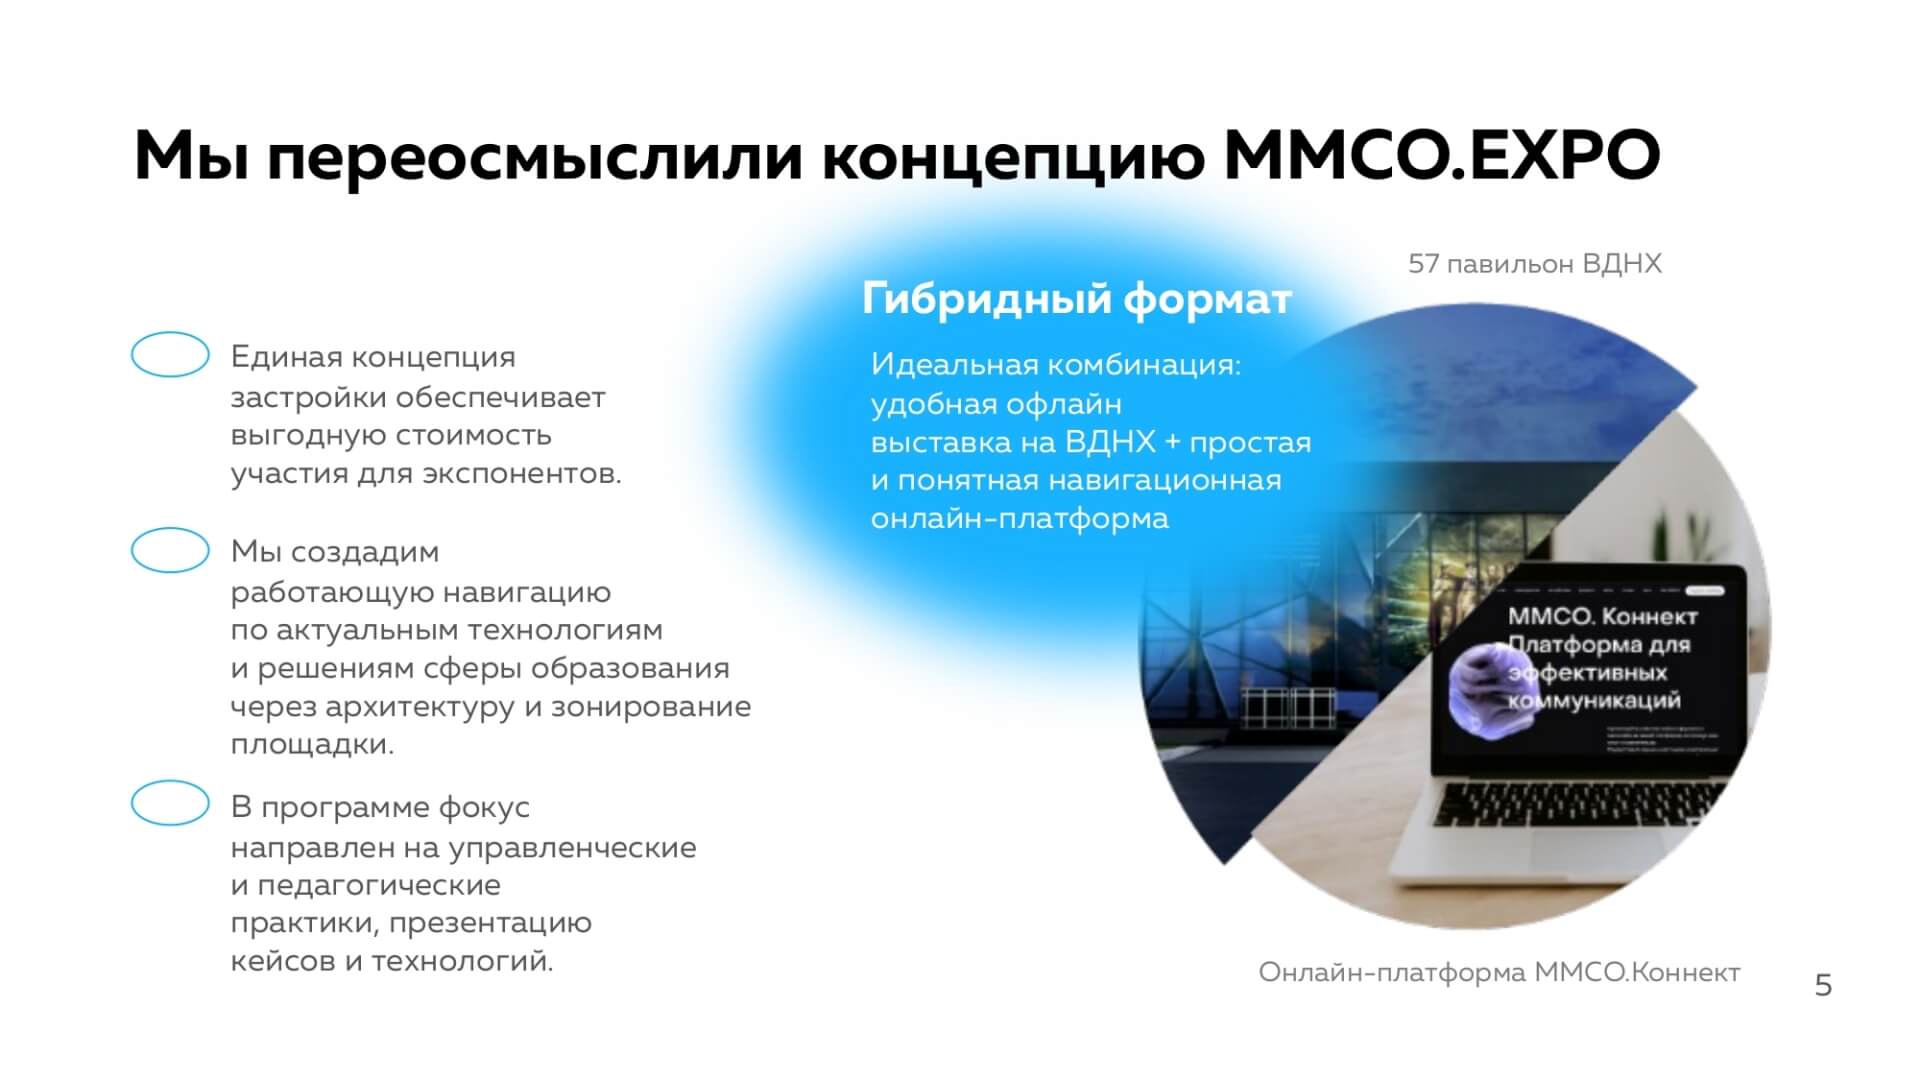 Презентация_ММСО_ЭКСПО_2022